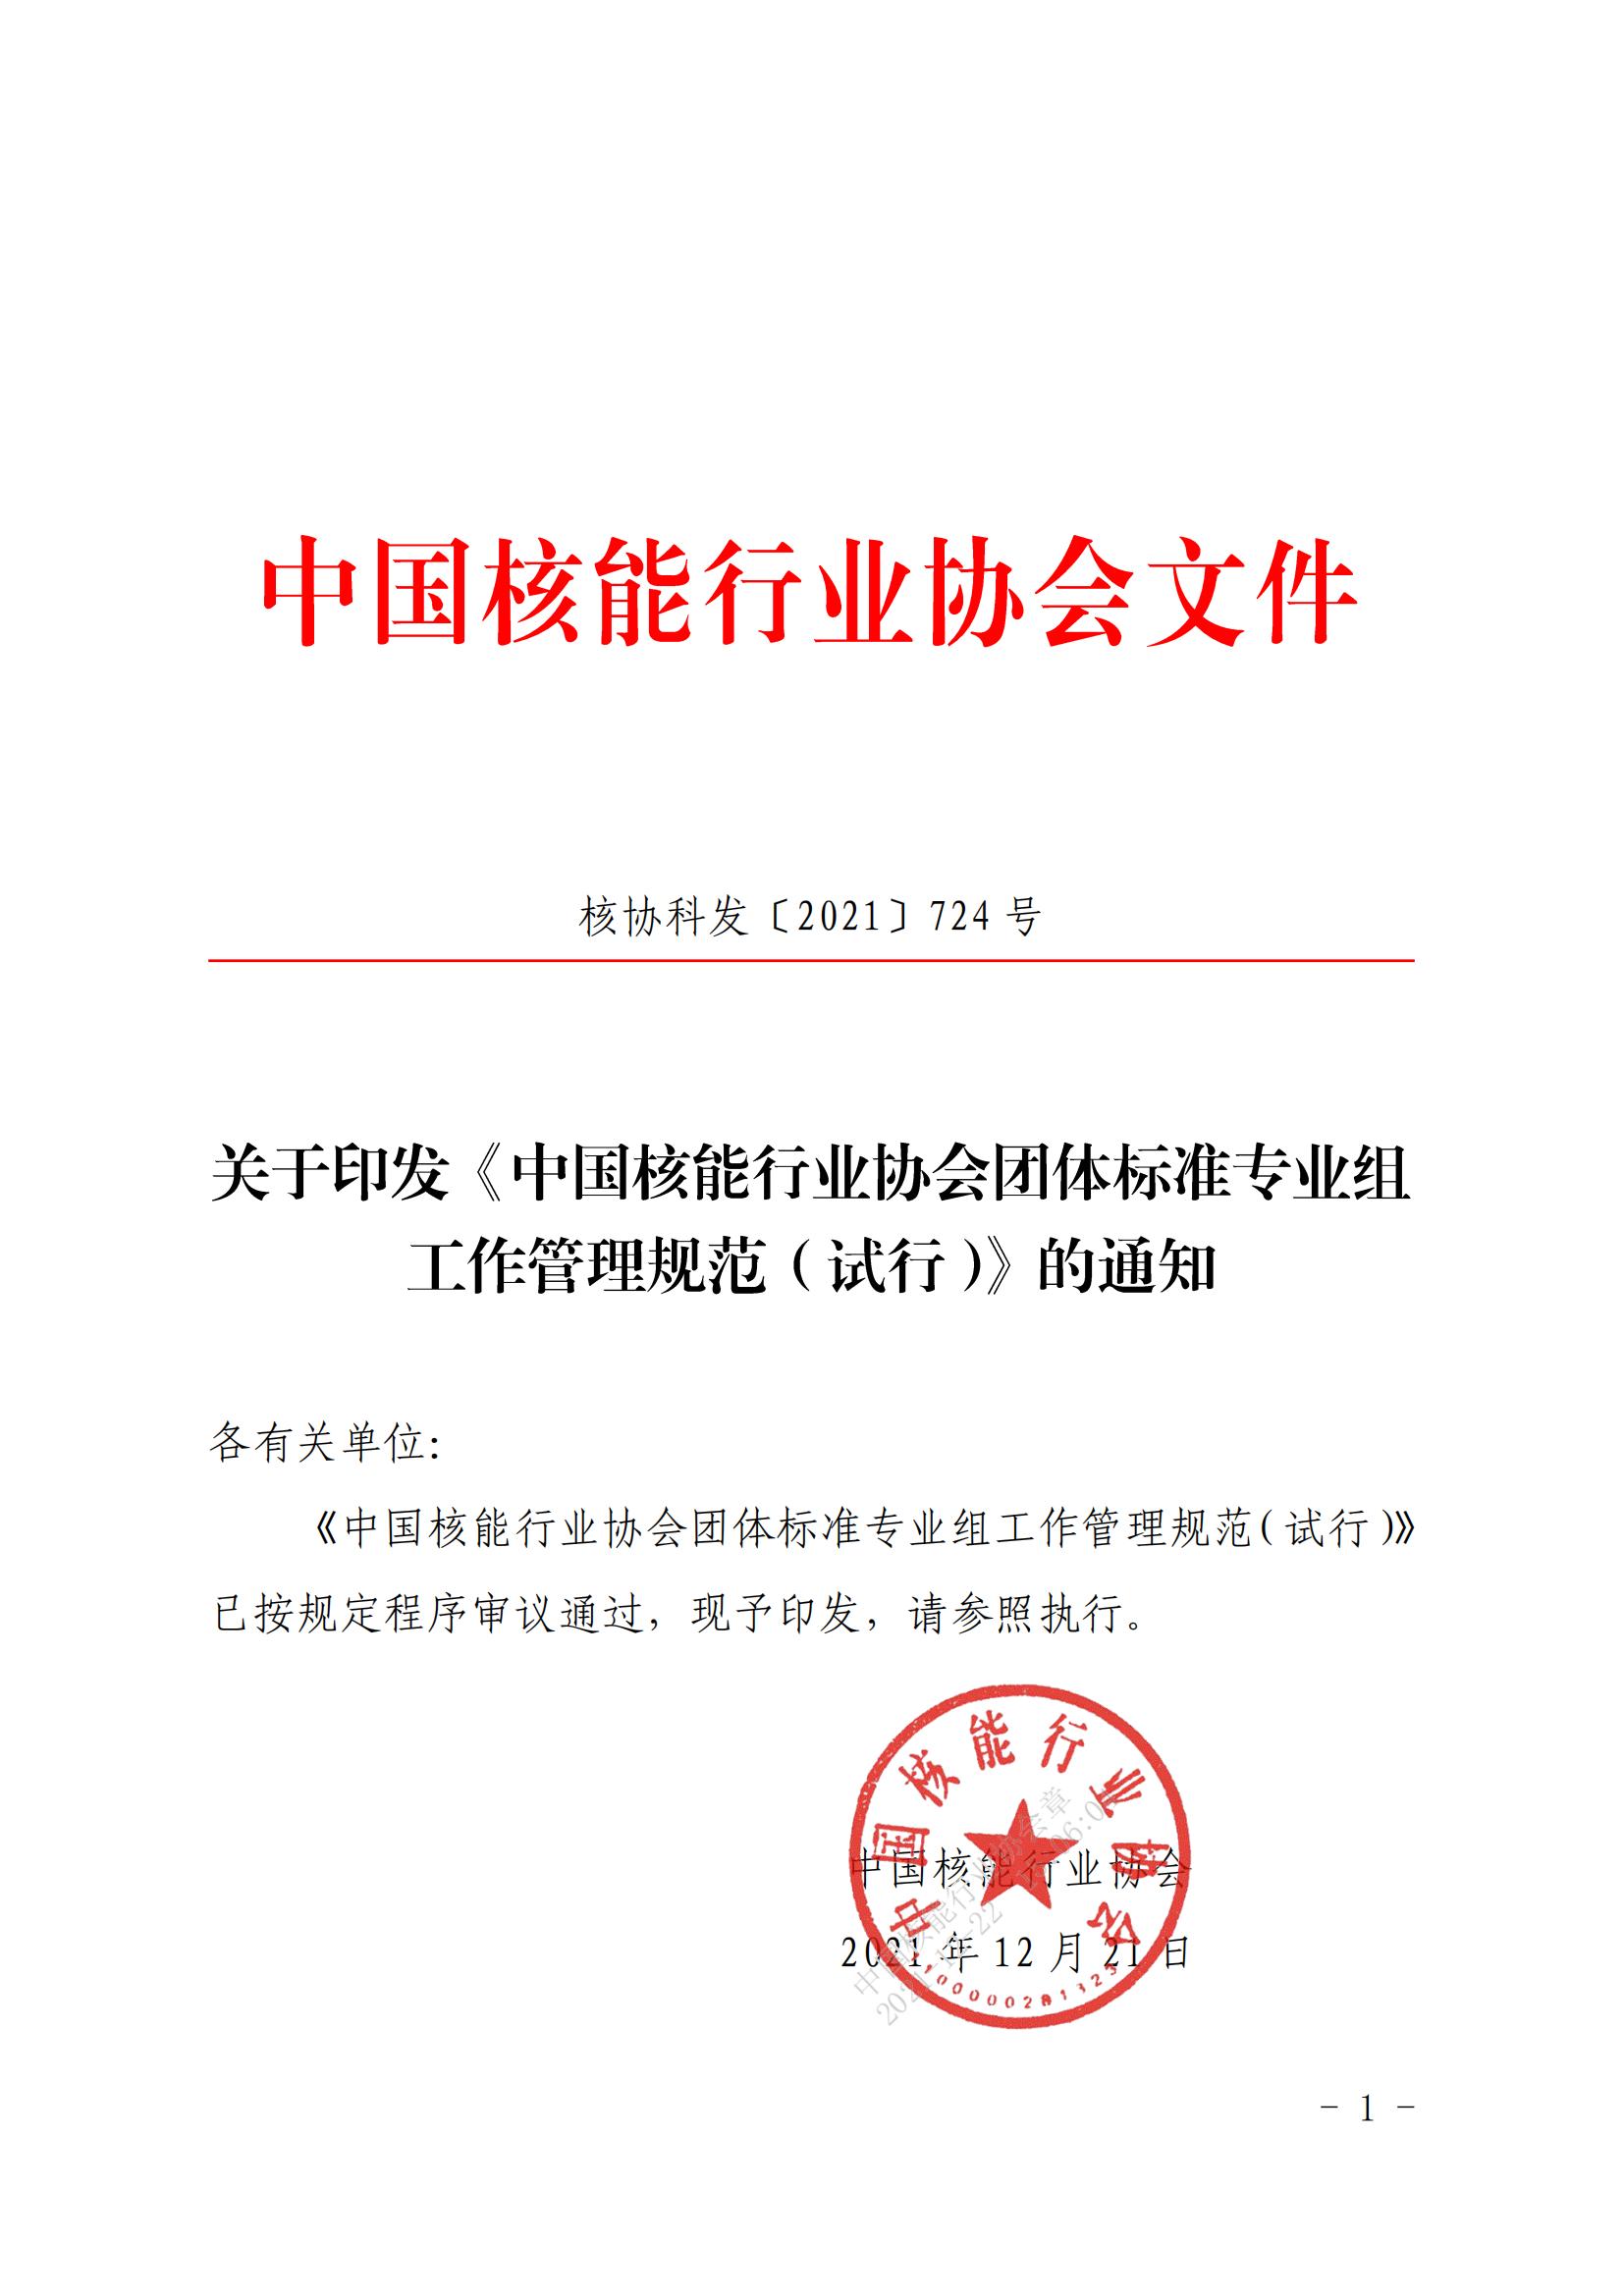 关于印发《中国核能行业协会团体标准专业组工作管理规范（试行）》的通知_00.jpg